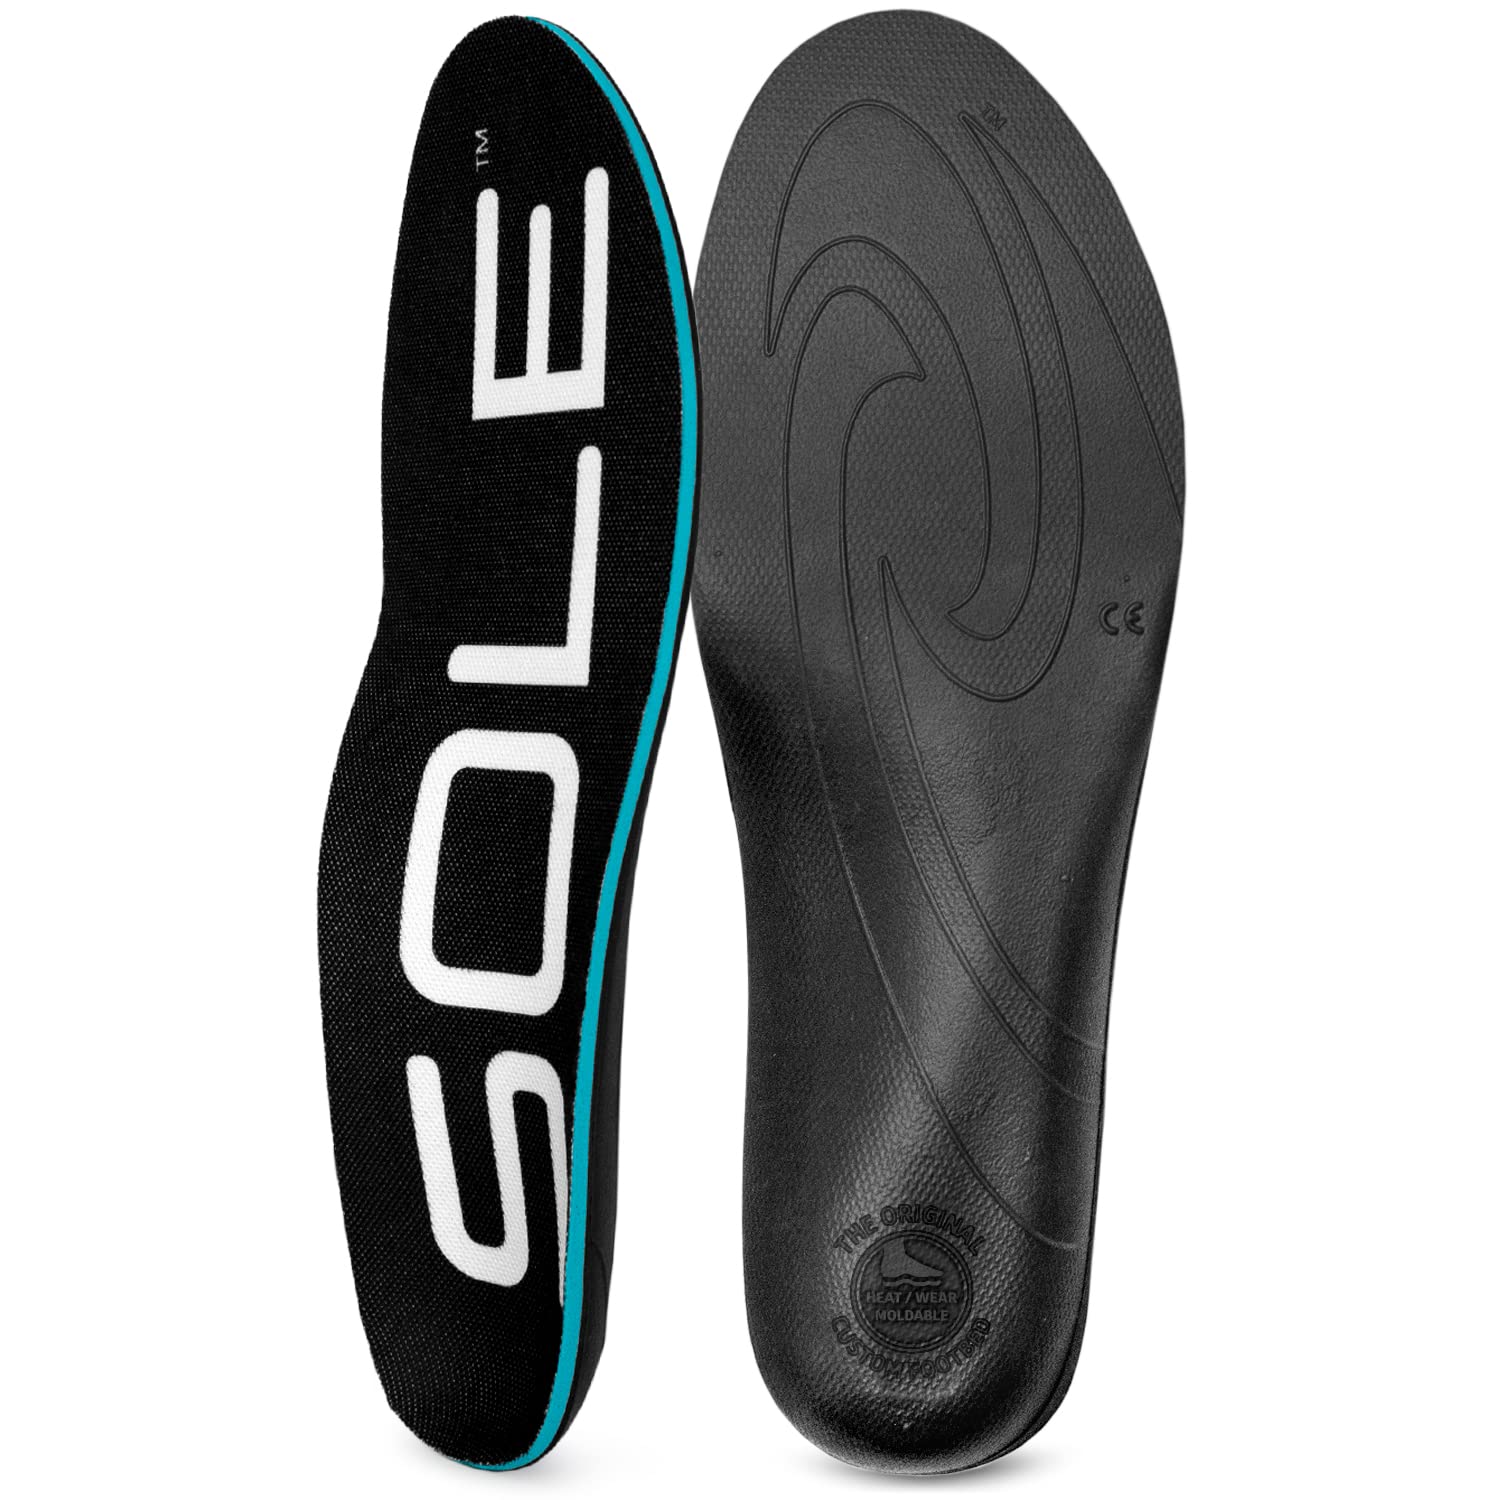 SOLE Active Thick Insoles - Men's Size 12/Women's Size 14 Black